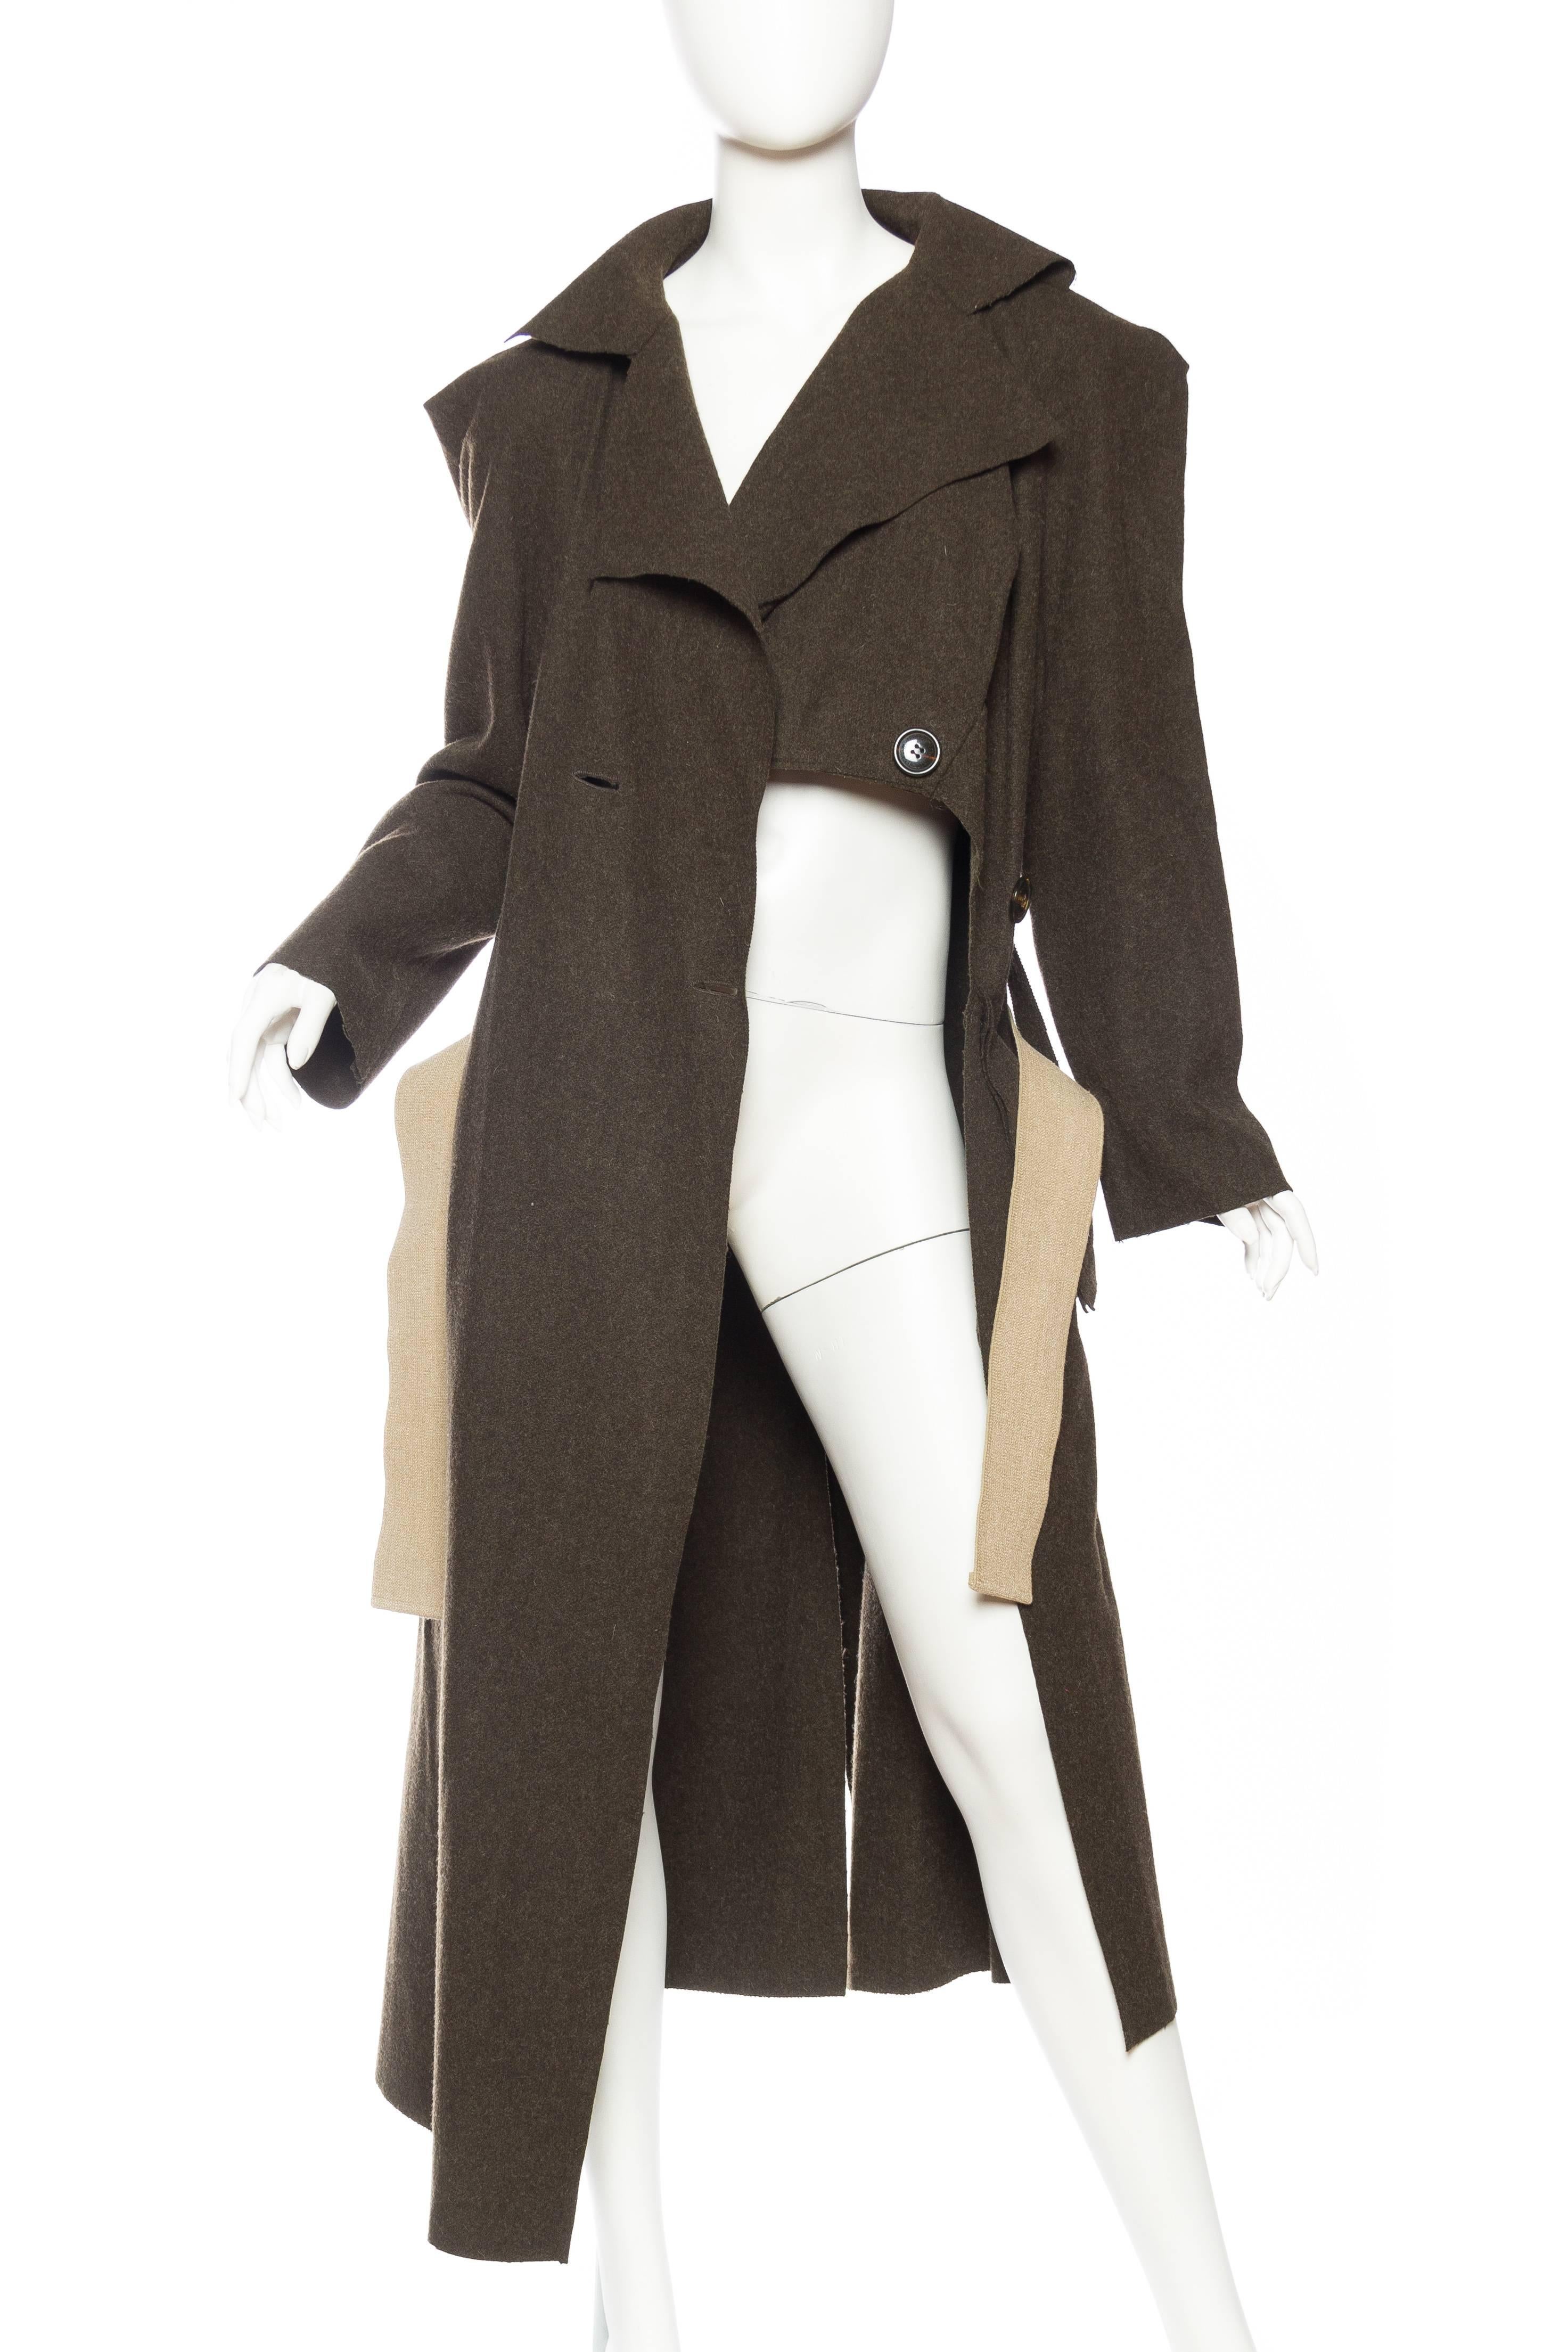 Noir Trench-coat asymétrique Anglomania en laine vert olive Vivienne Westwood, années 1990 en vente